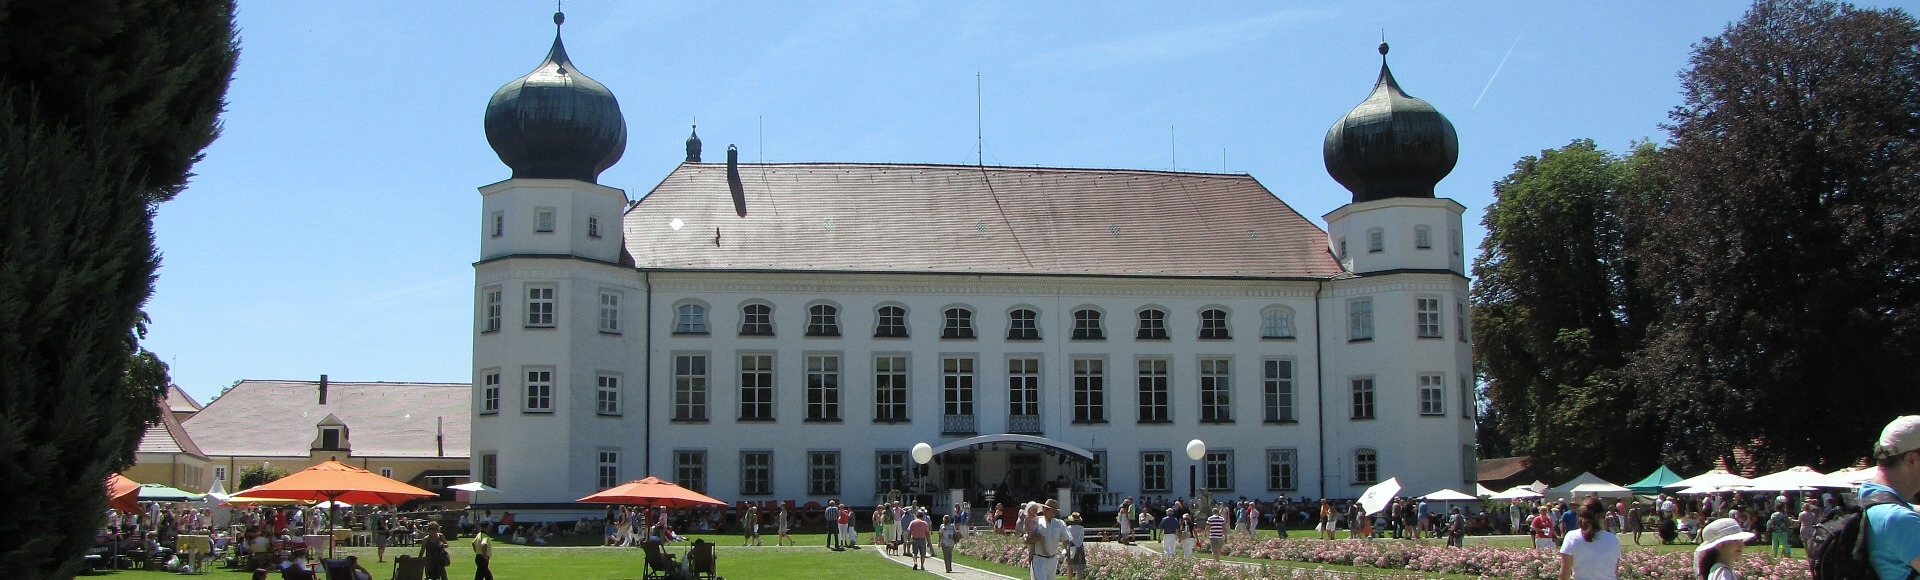 Gartentage auf Schloss Tüssling